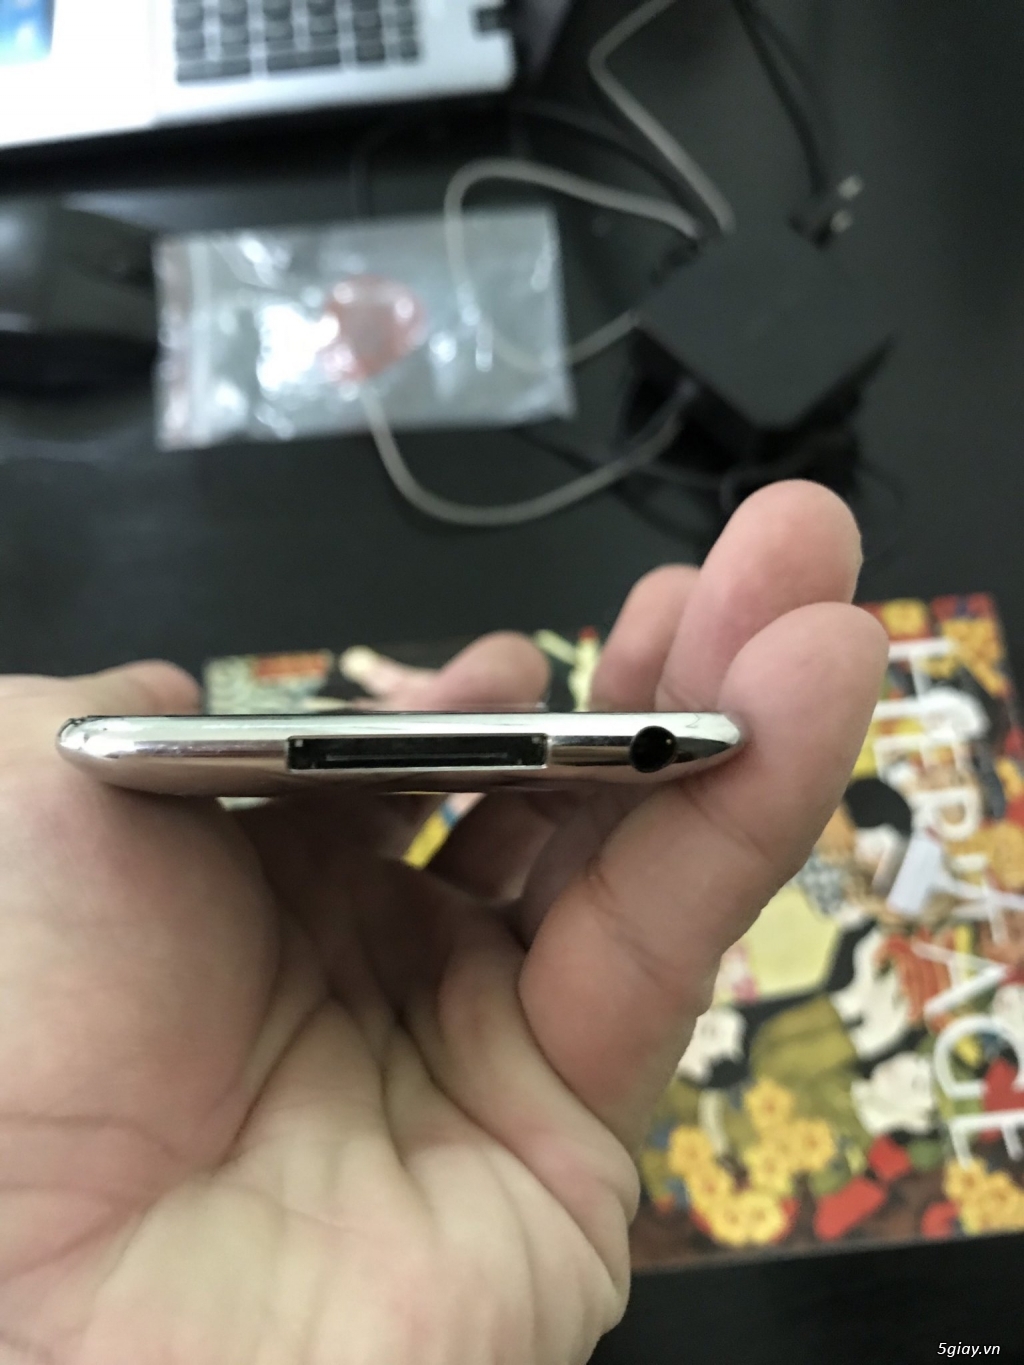 Ipod Touch 32GB (Lỗi cảm ứng) + Shuffle 1GB ngoại hình đẹp (Lỗi pin) - 1